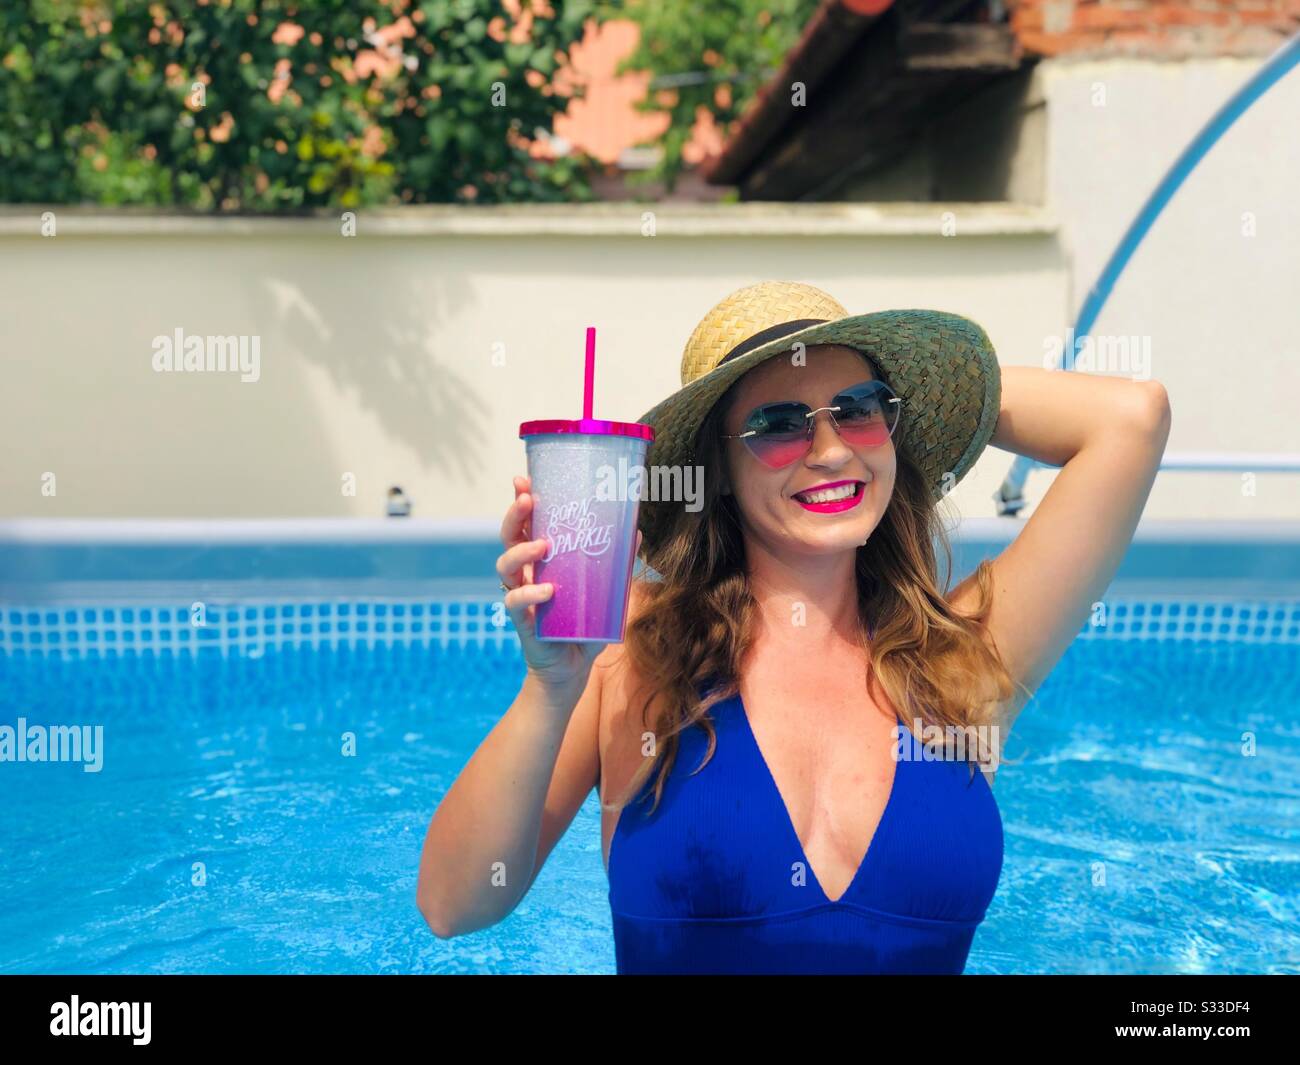 Mujer con bikini azul, gafas de sol y sombrero de paja, sosteniendo una bebida en la piscina Foto de stock